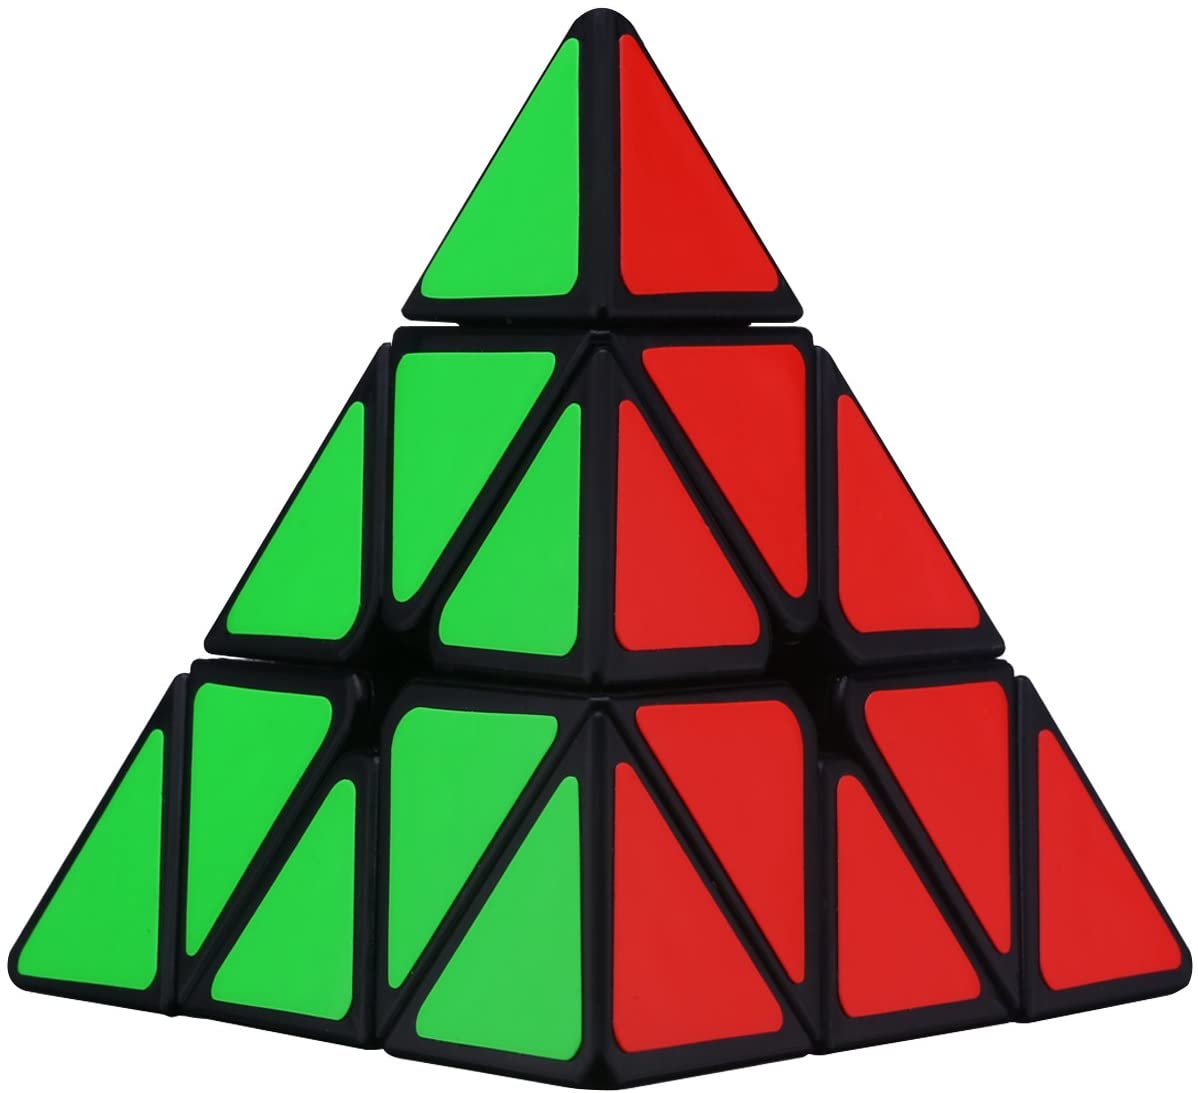 Rubix Pyramid - KibrisPDR